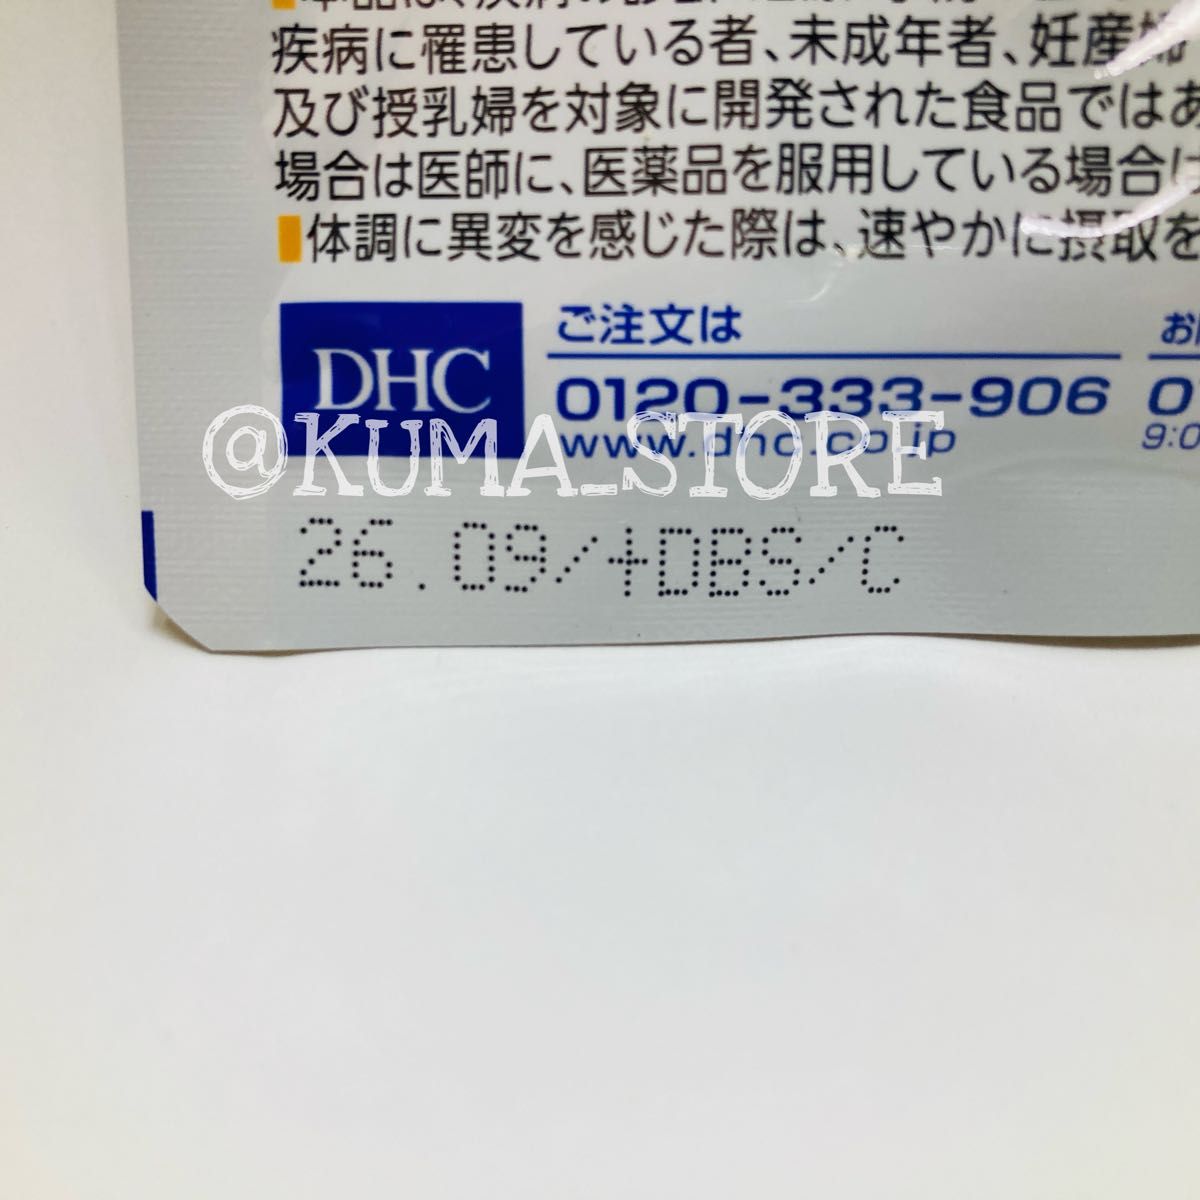 2袋 DHC イチョウ葉 脳内α アルファ 30日分 健康食品 サプリメント